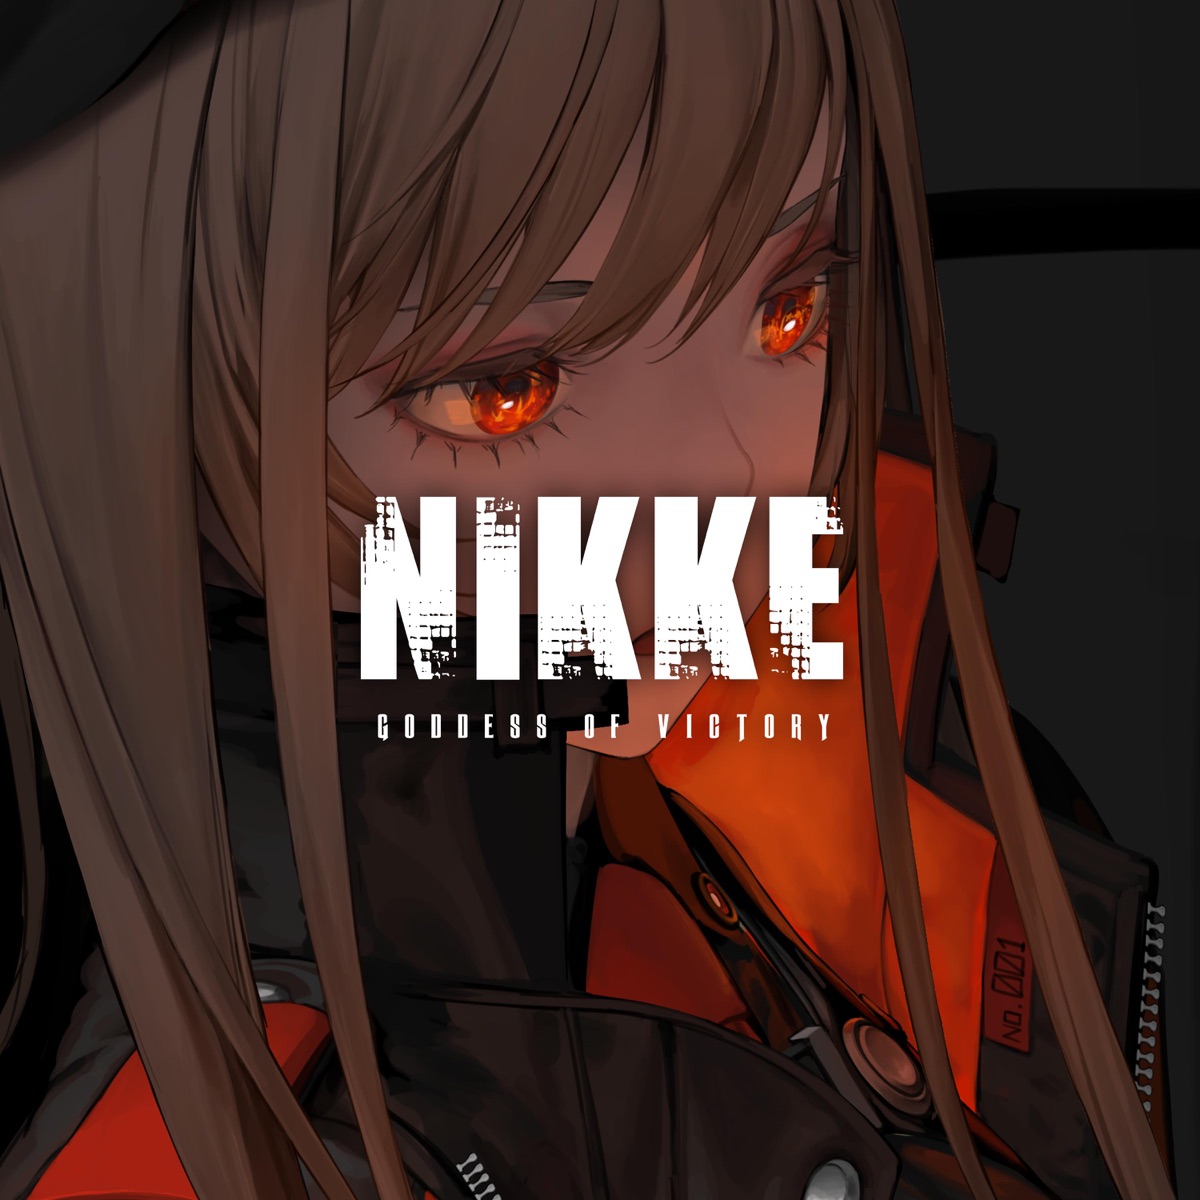 Events (Goddess of Victory: NIKKE Original Soundtrack) - Album by 